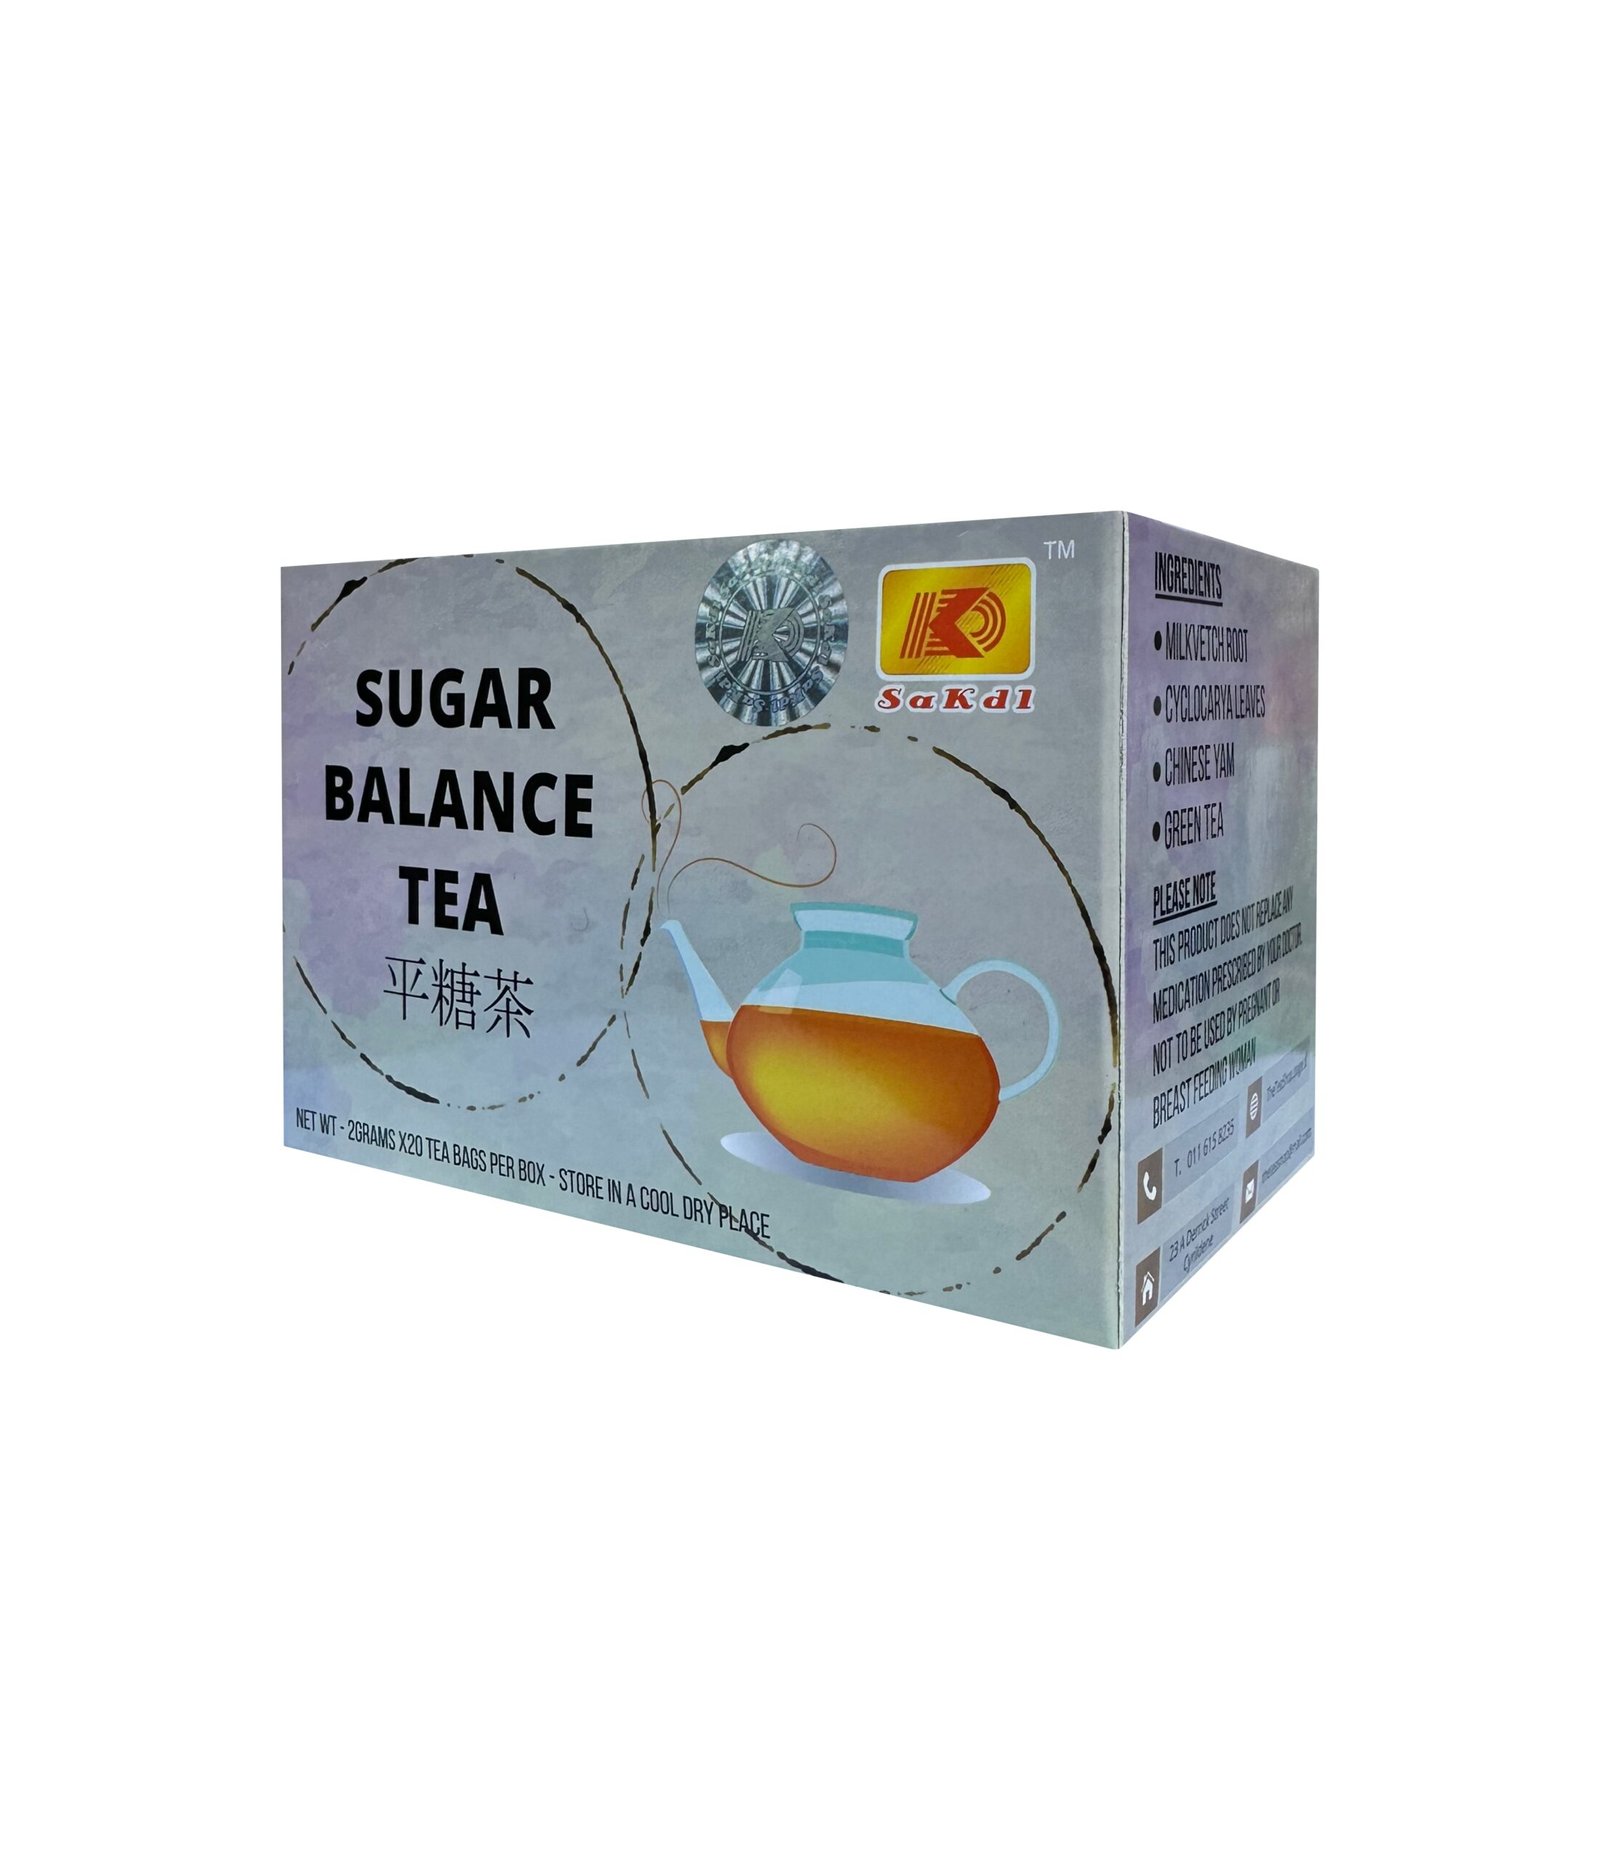 Sugar Balance Tea